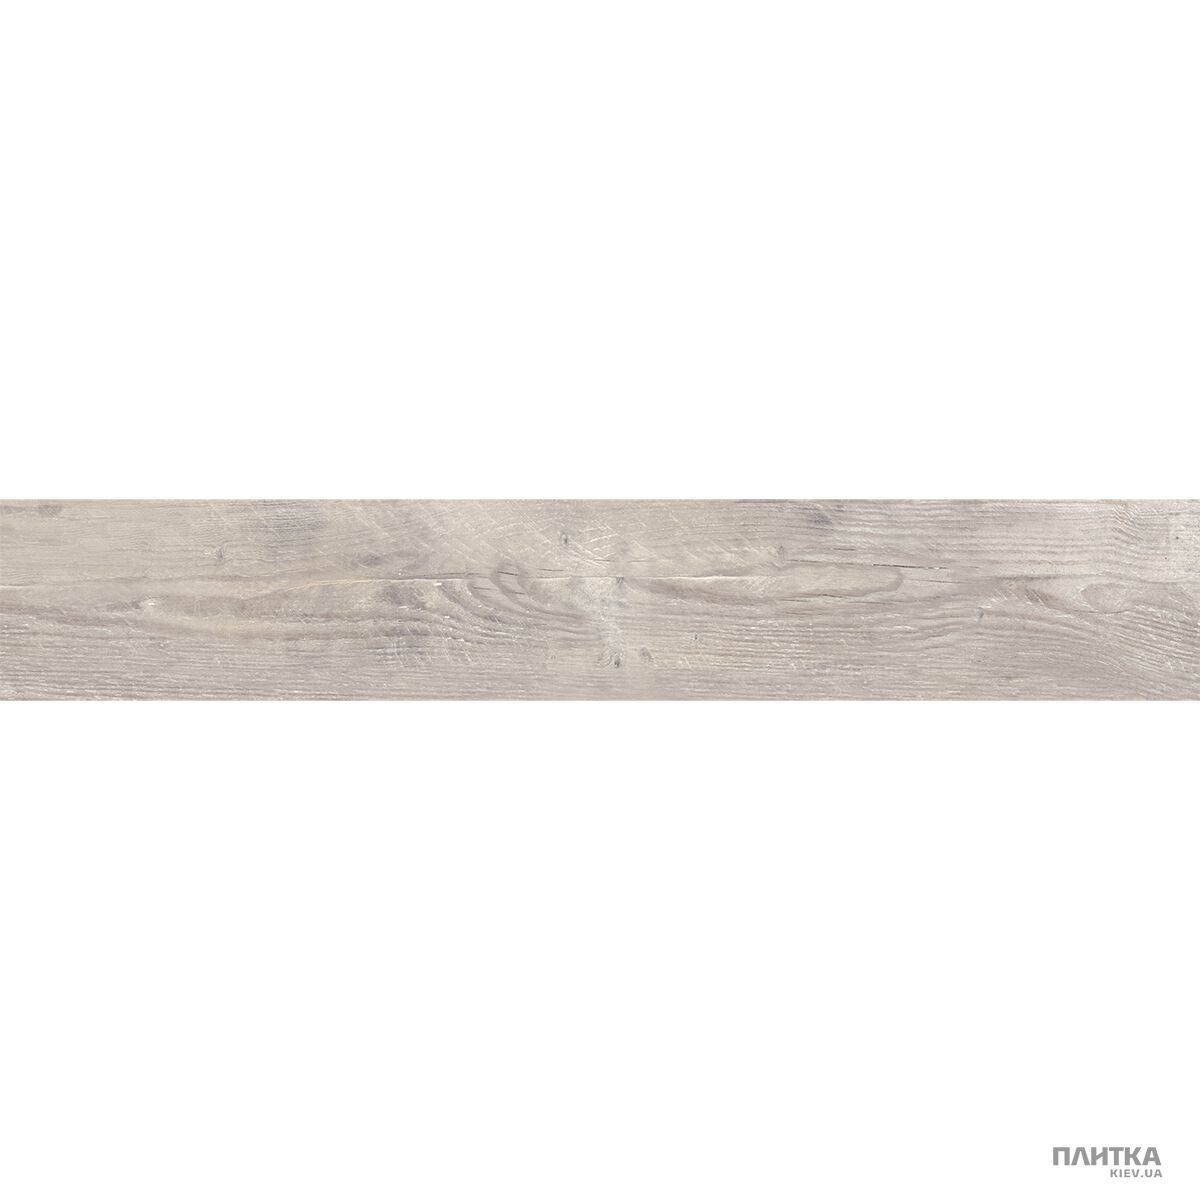 Керамогранит Golden Tile Timber TIMBER Пепельный 37И120 серый